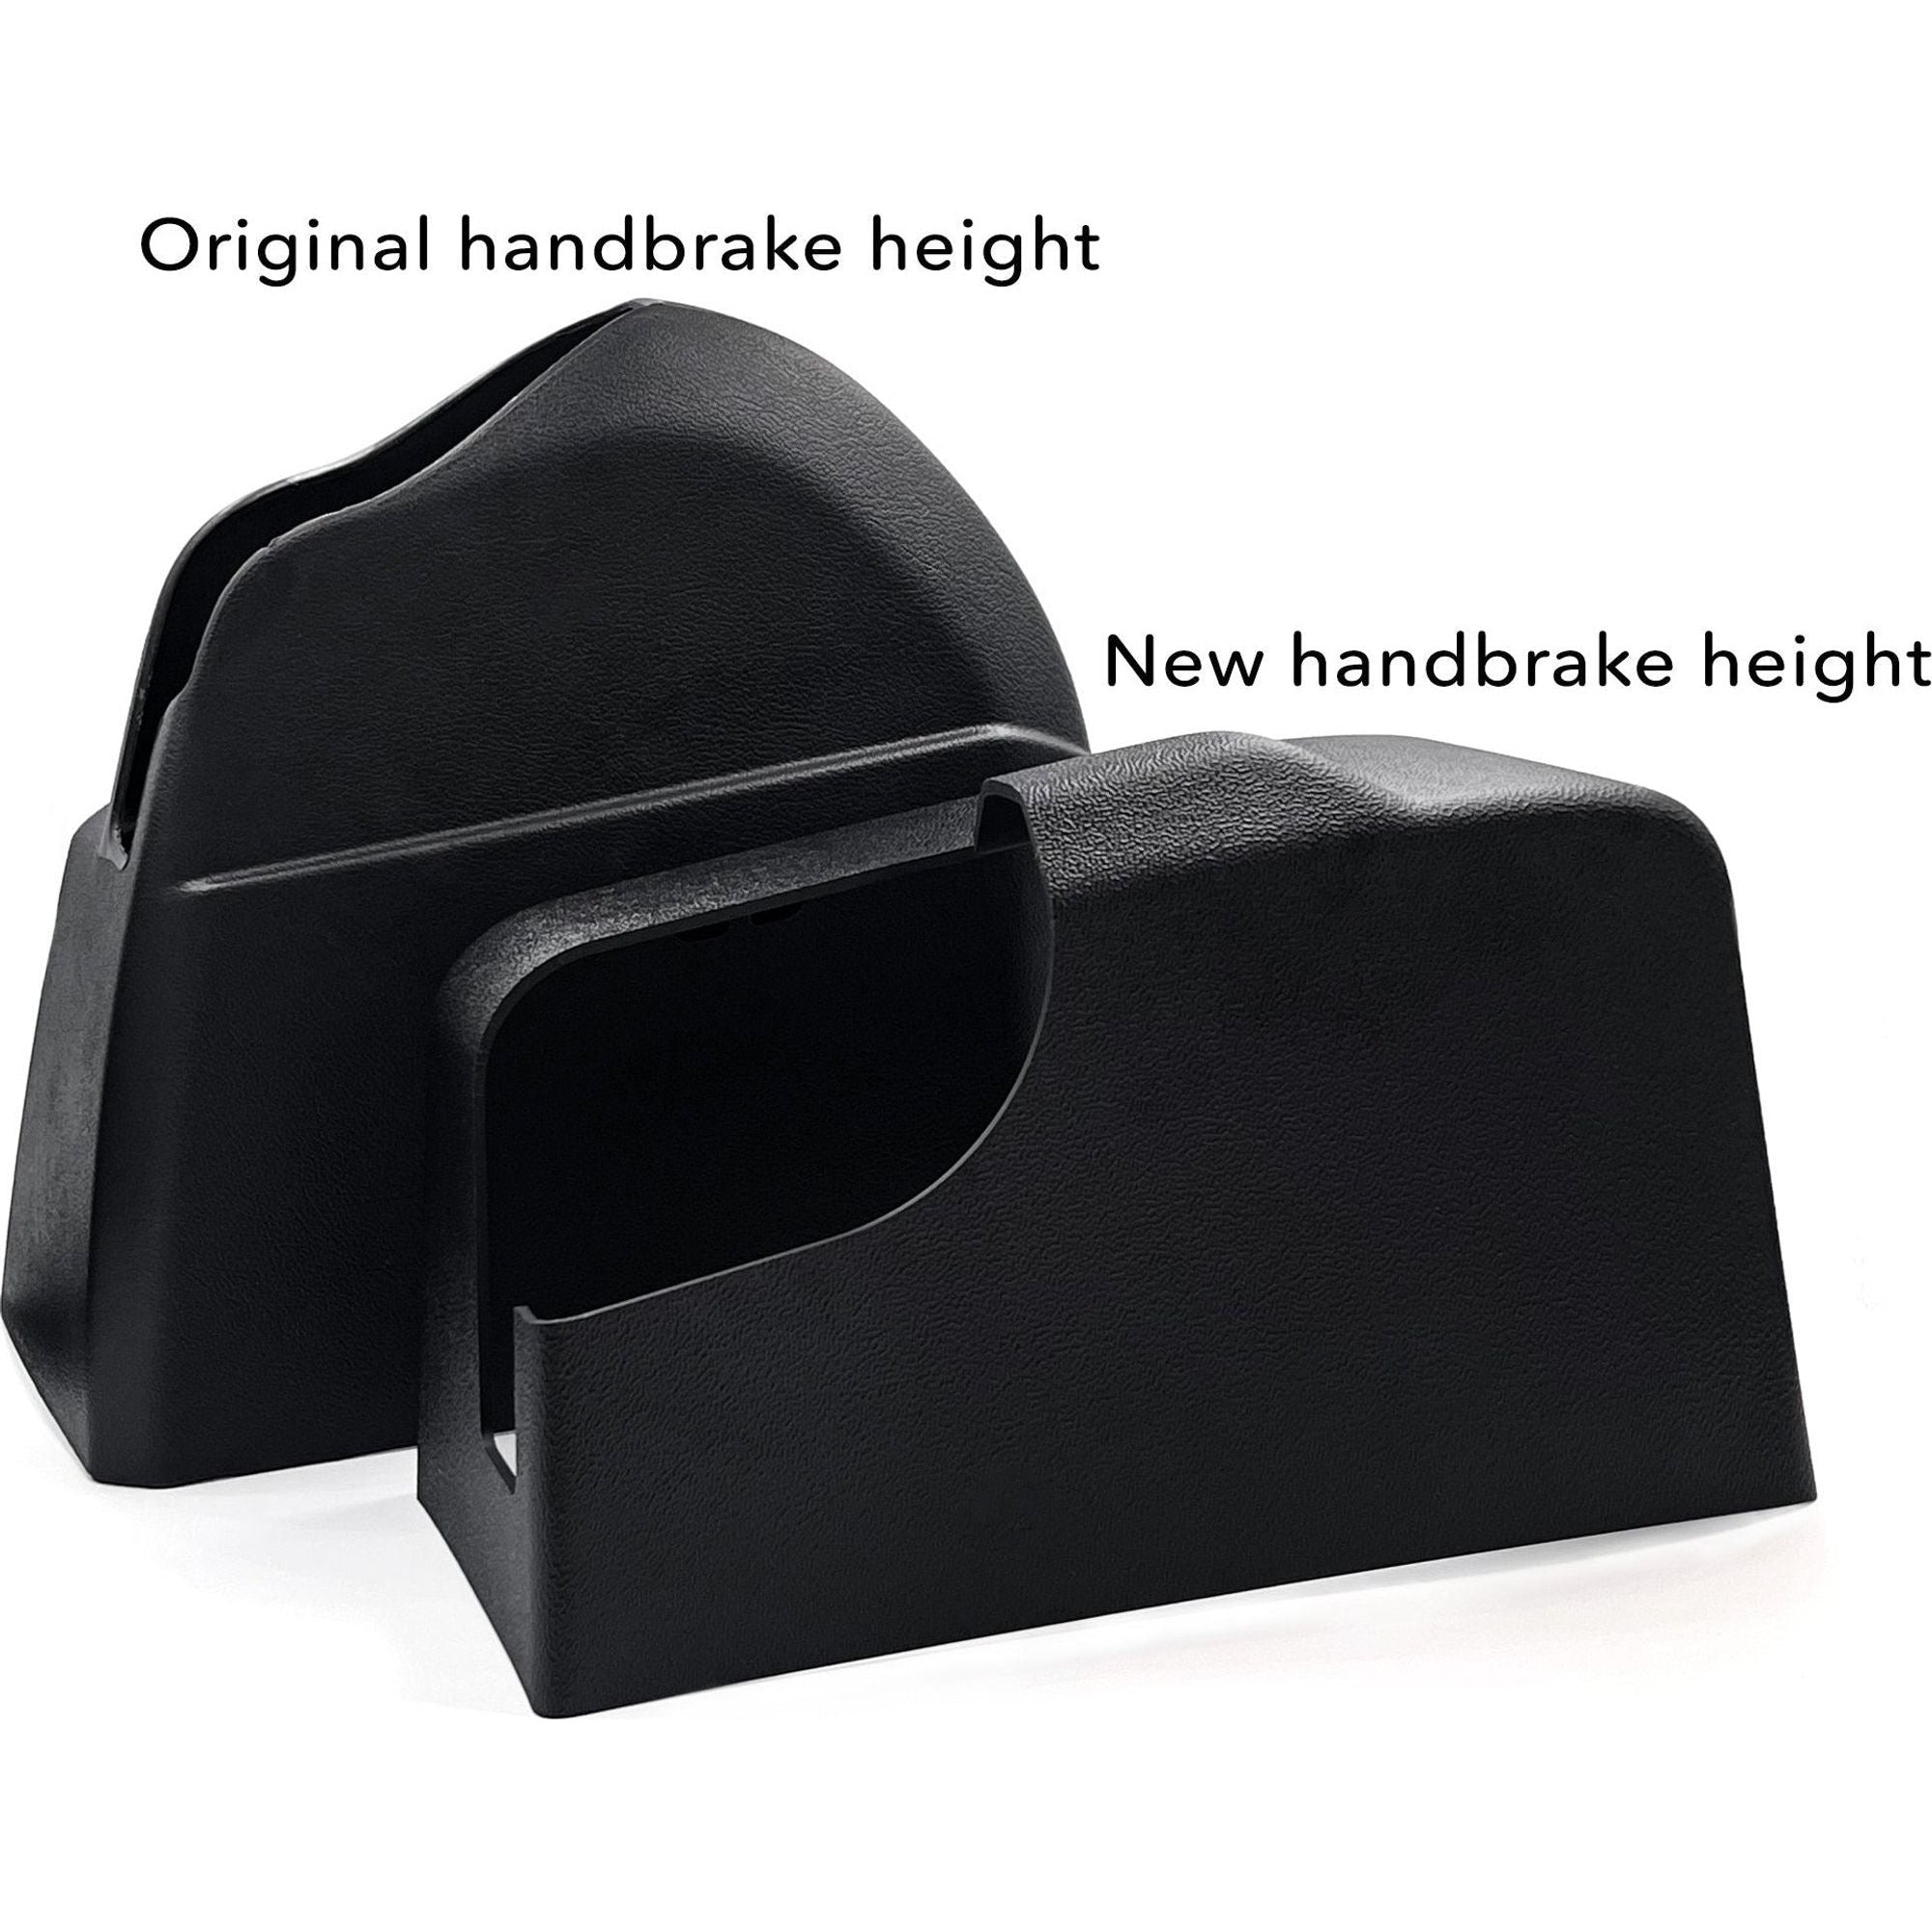 https://www.kiravans.co.uk/cdn/shop/products/New-handbrake-vs-old-height.jpg?v=1692102127&width=2000